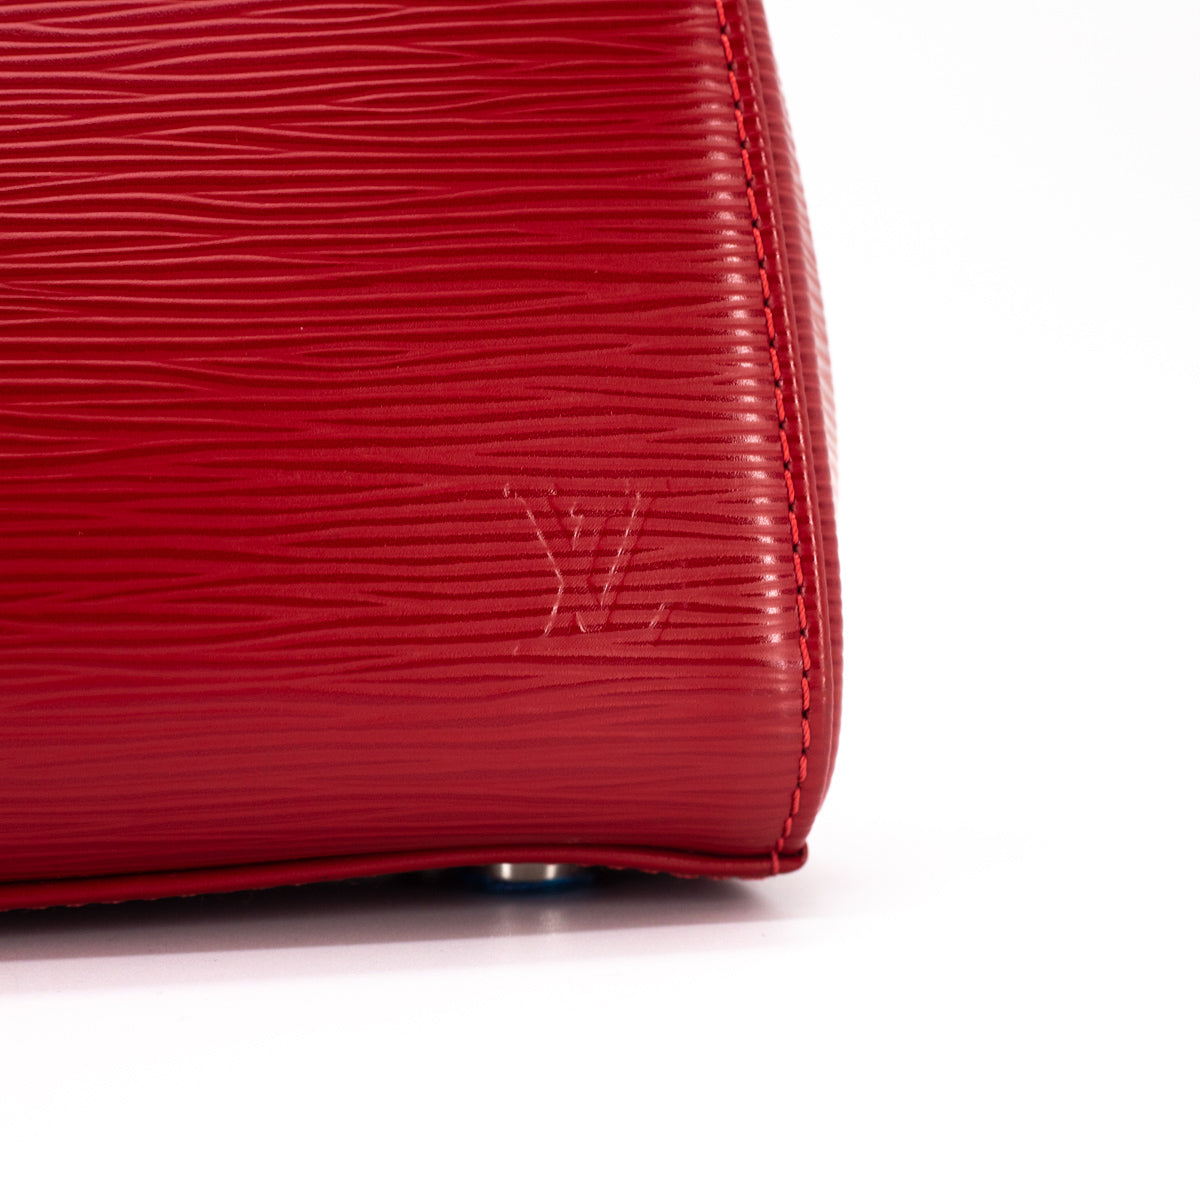 Louis Vuitton Epi Leather Brea MM Satchel (SHF-11498) – LuxeDH